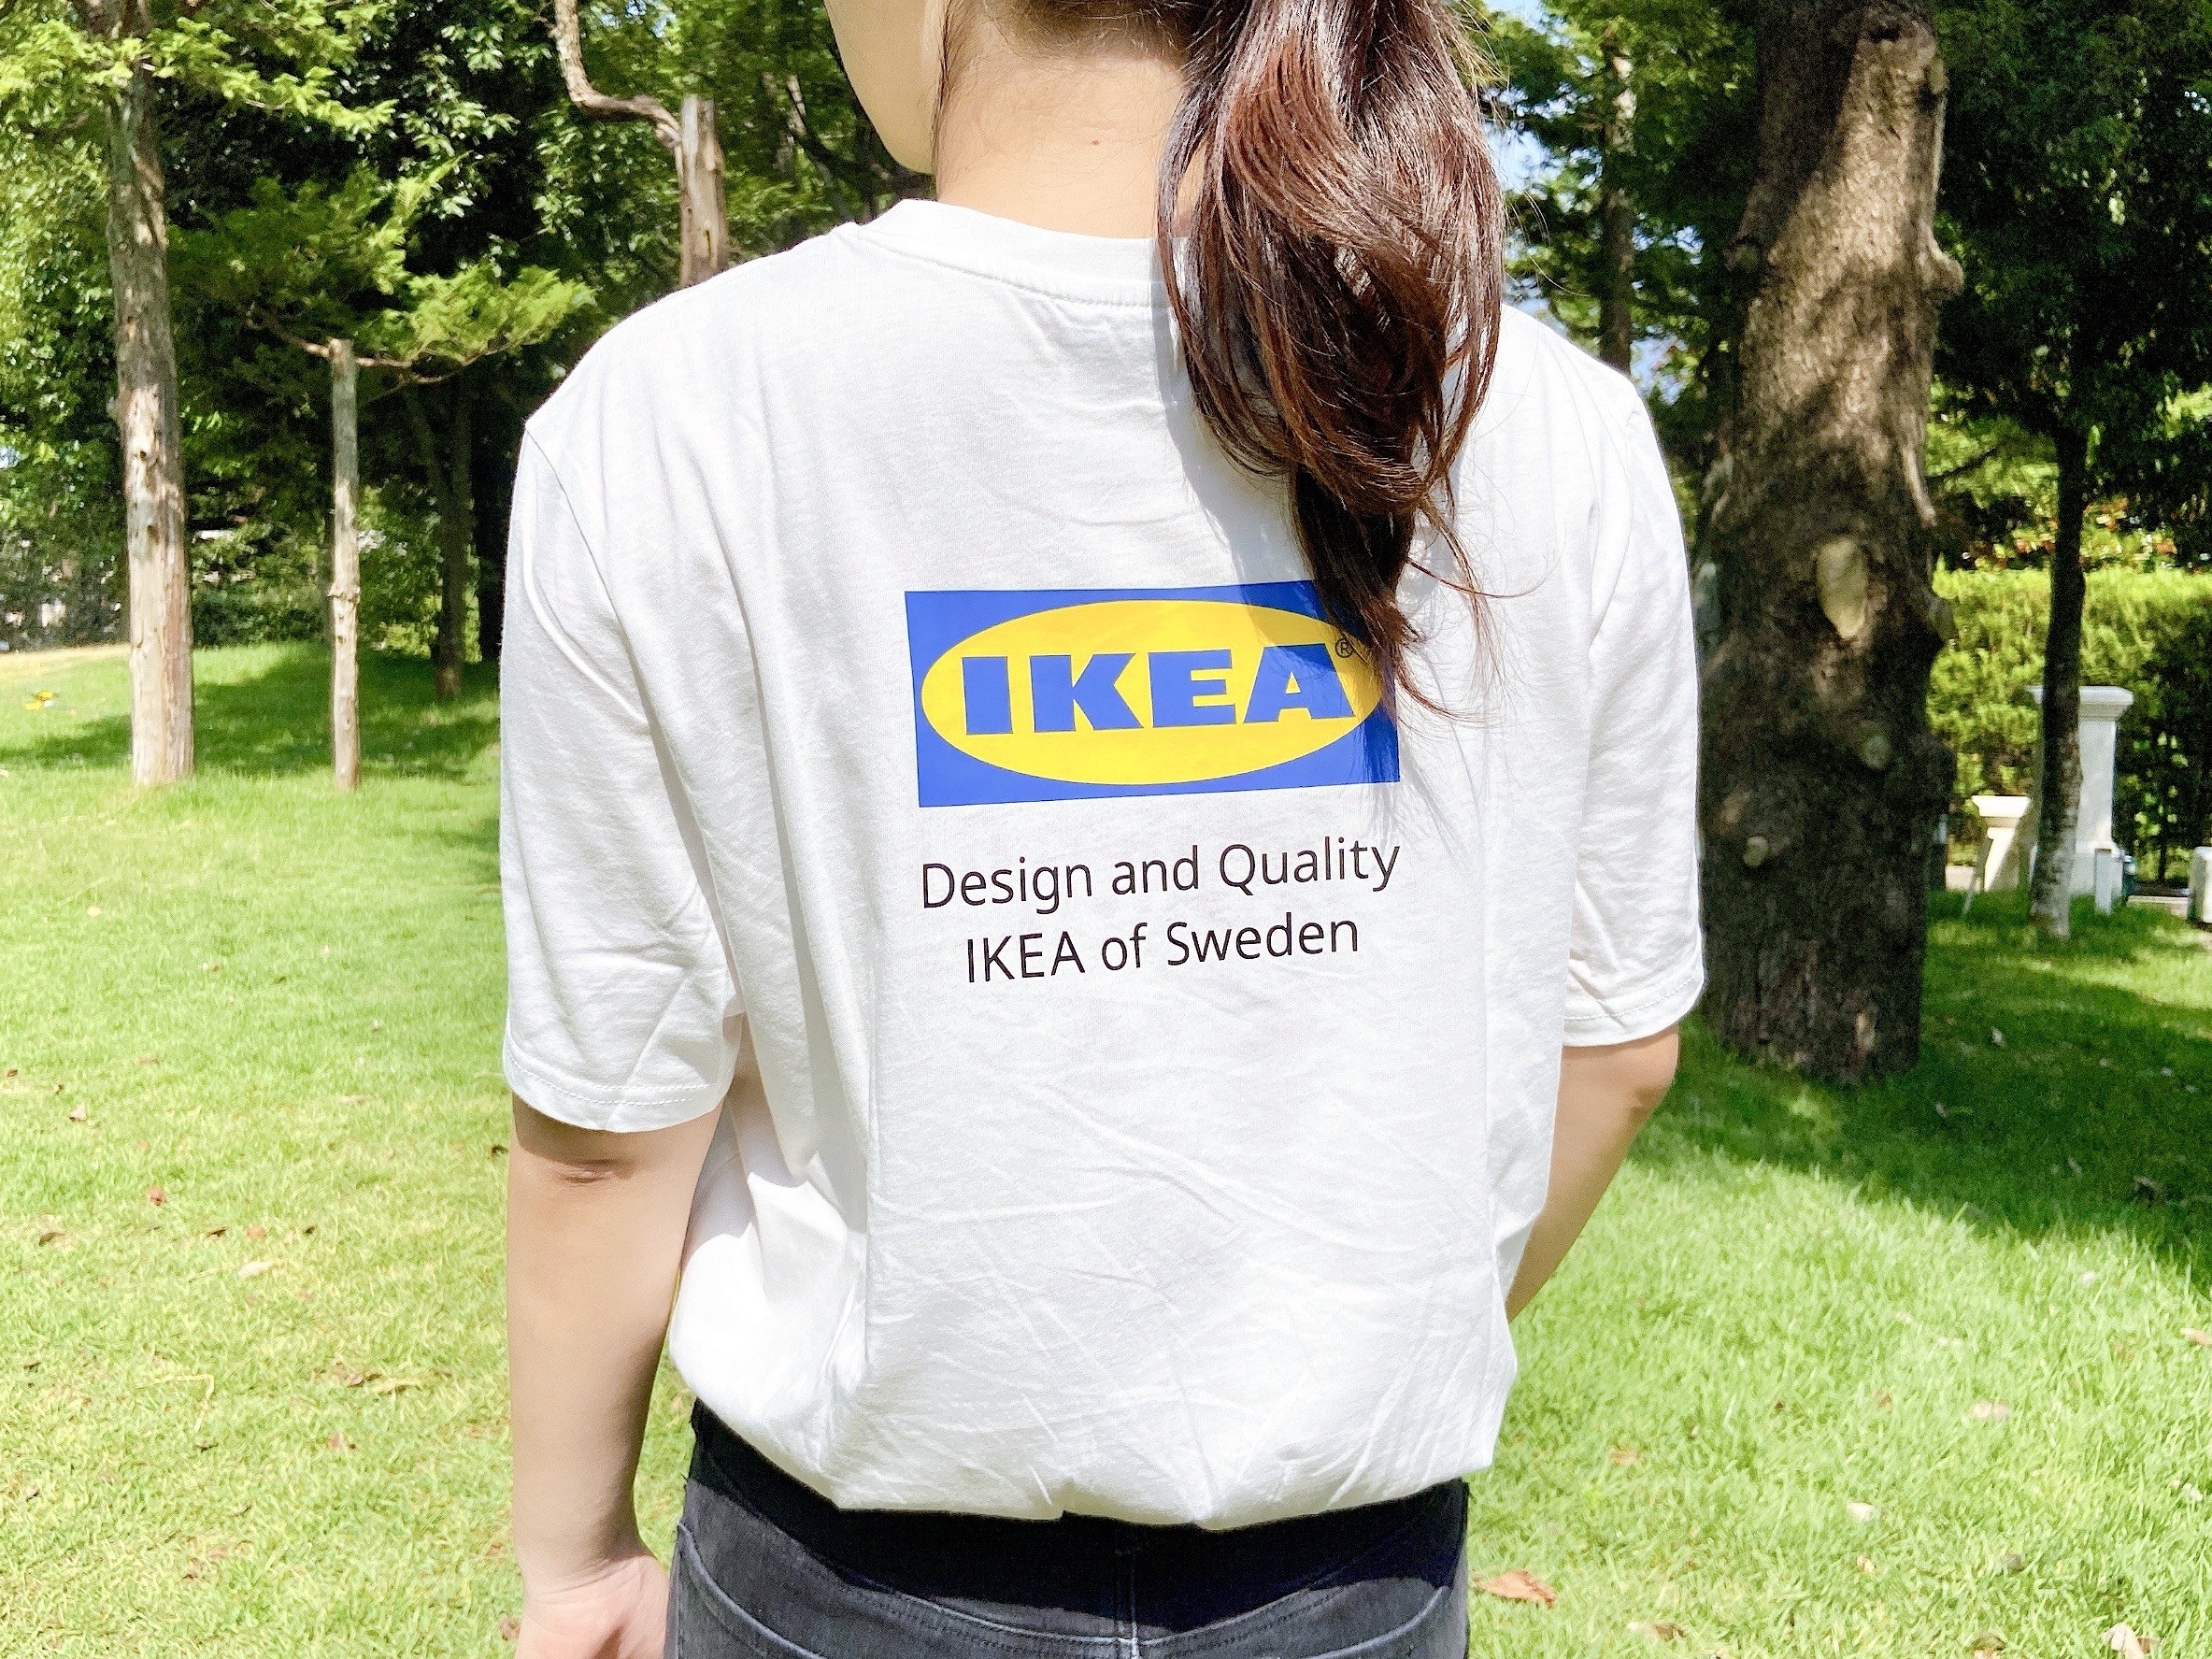 これはかわいいわ Ikeaファン歓喜の ロゴ入りtシャツ が爆誕してた